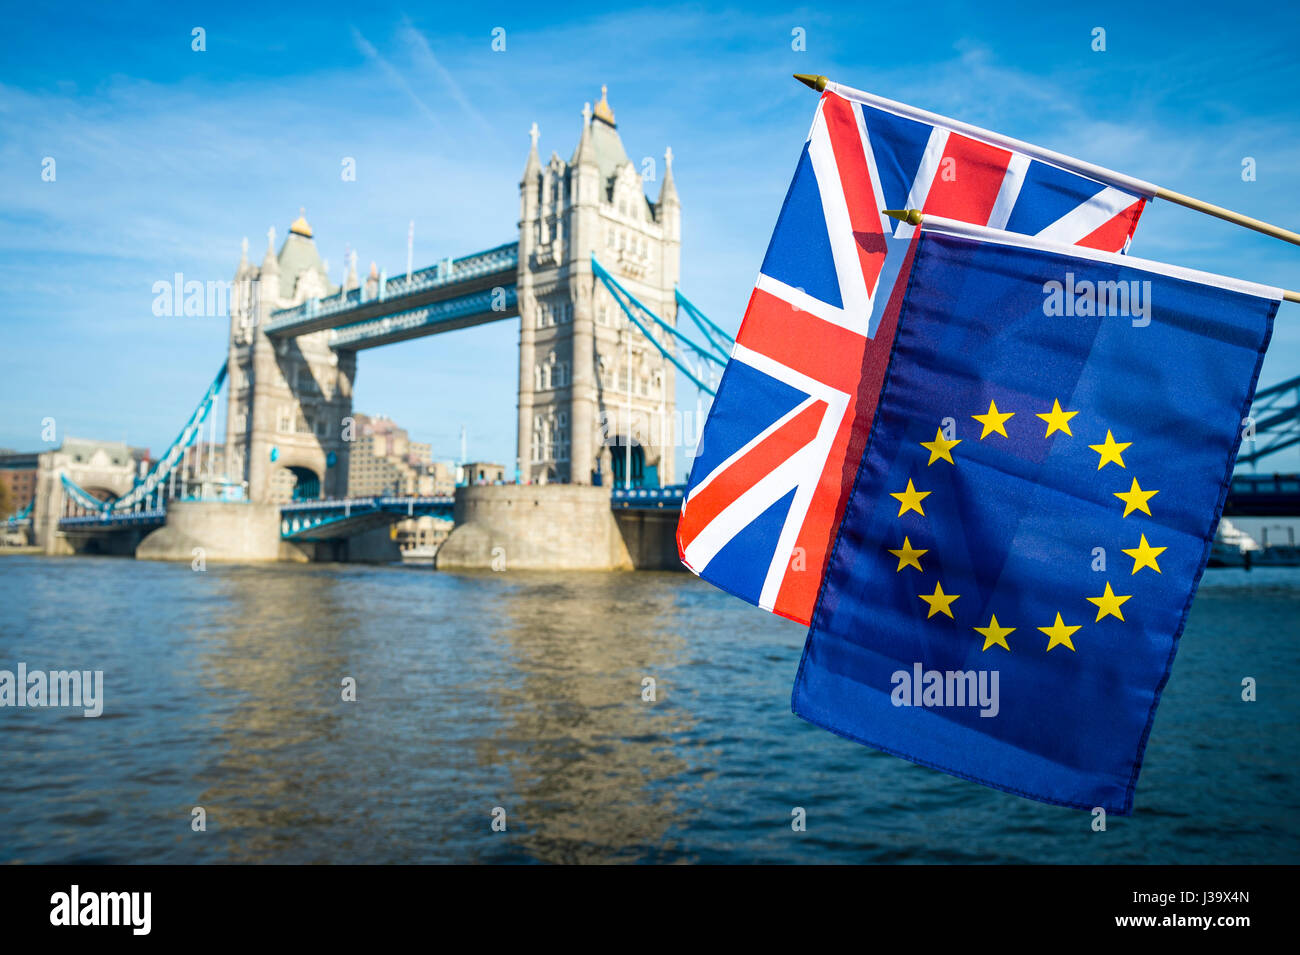 L'Union européenne et de l'UE UK Royaume-Uni drapeaux flottants ensemble en solidarité Brexit en face de la skyline à Londres, Angleterre le Tower Bridge Banque D'Images